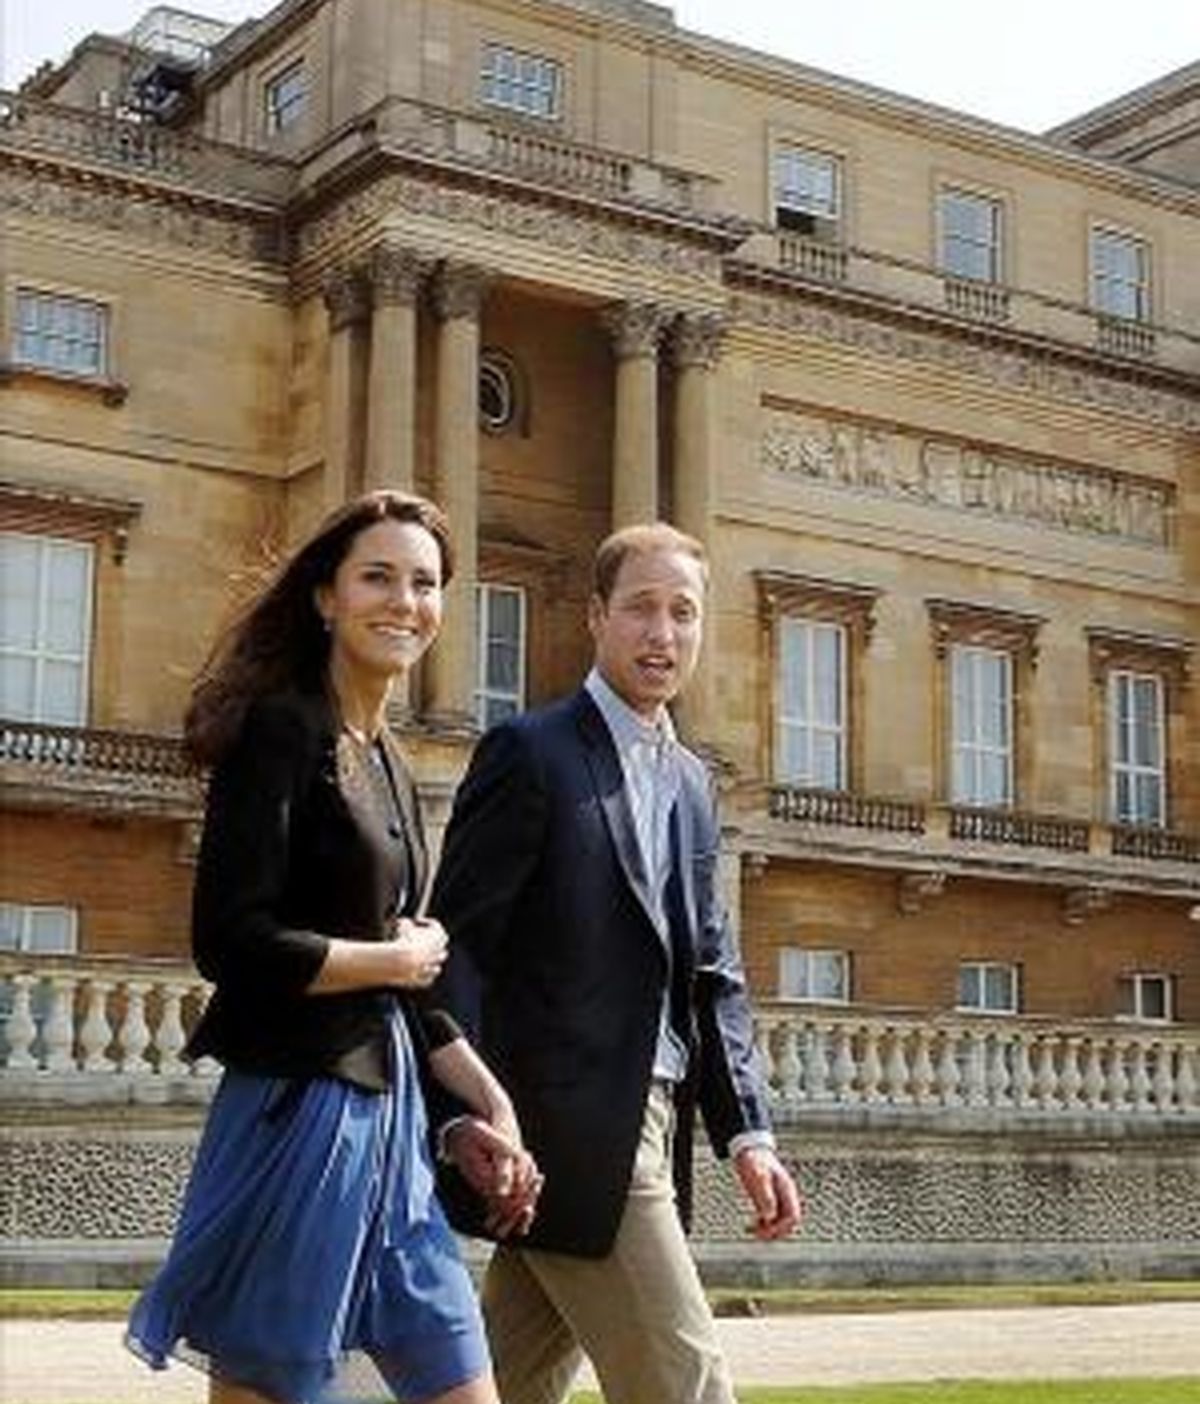 El príncipe Guillermo y Catalina, los nuevos duques de Cambridge, caminan agarrados de la mano el recinto del palacio de Buckingham, en Londres (Reino Unido), el sábado 30 de abril, un día después de su boda. EFE/Archivo